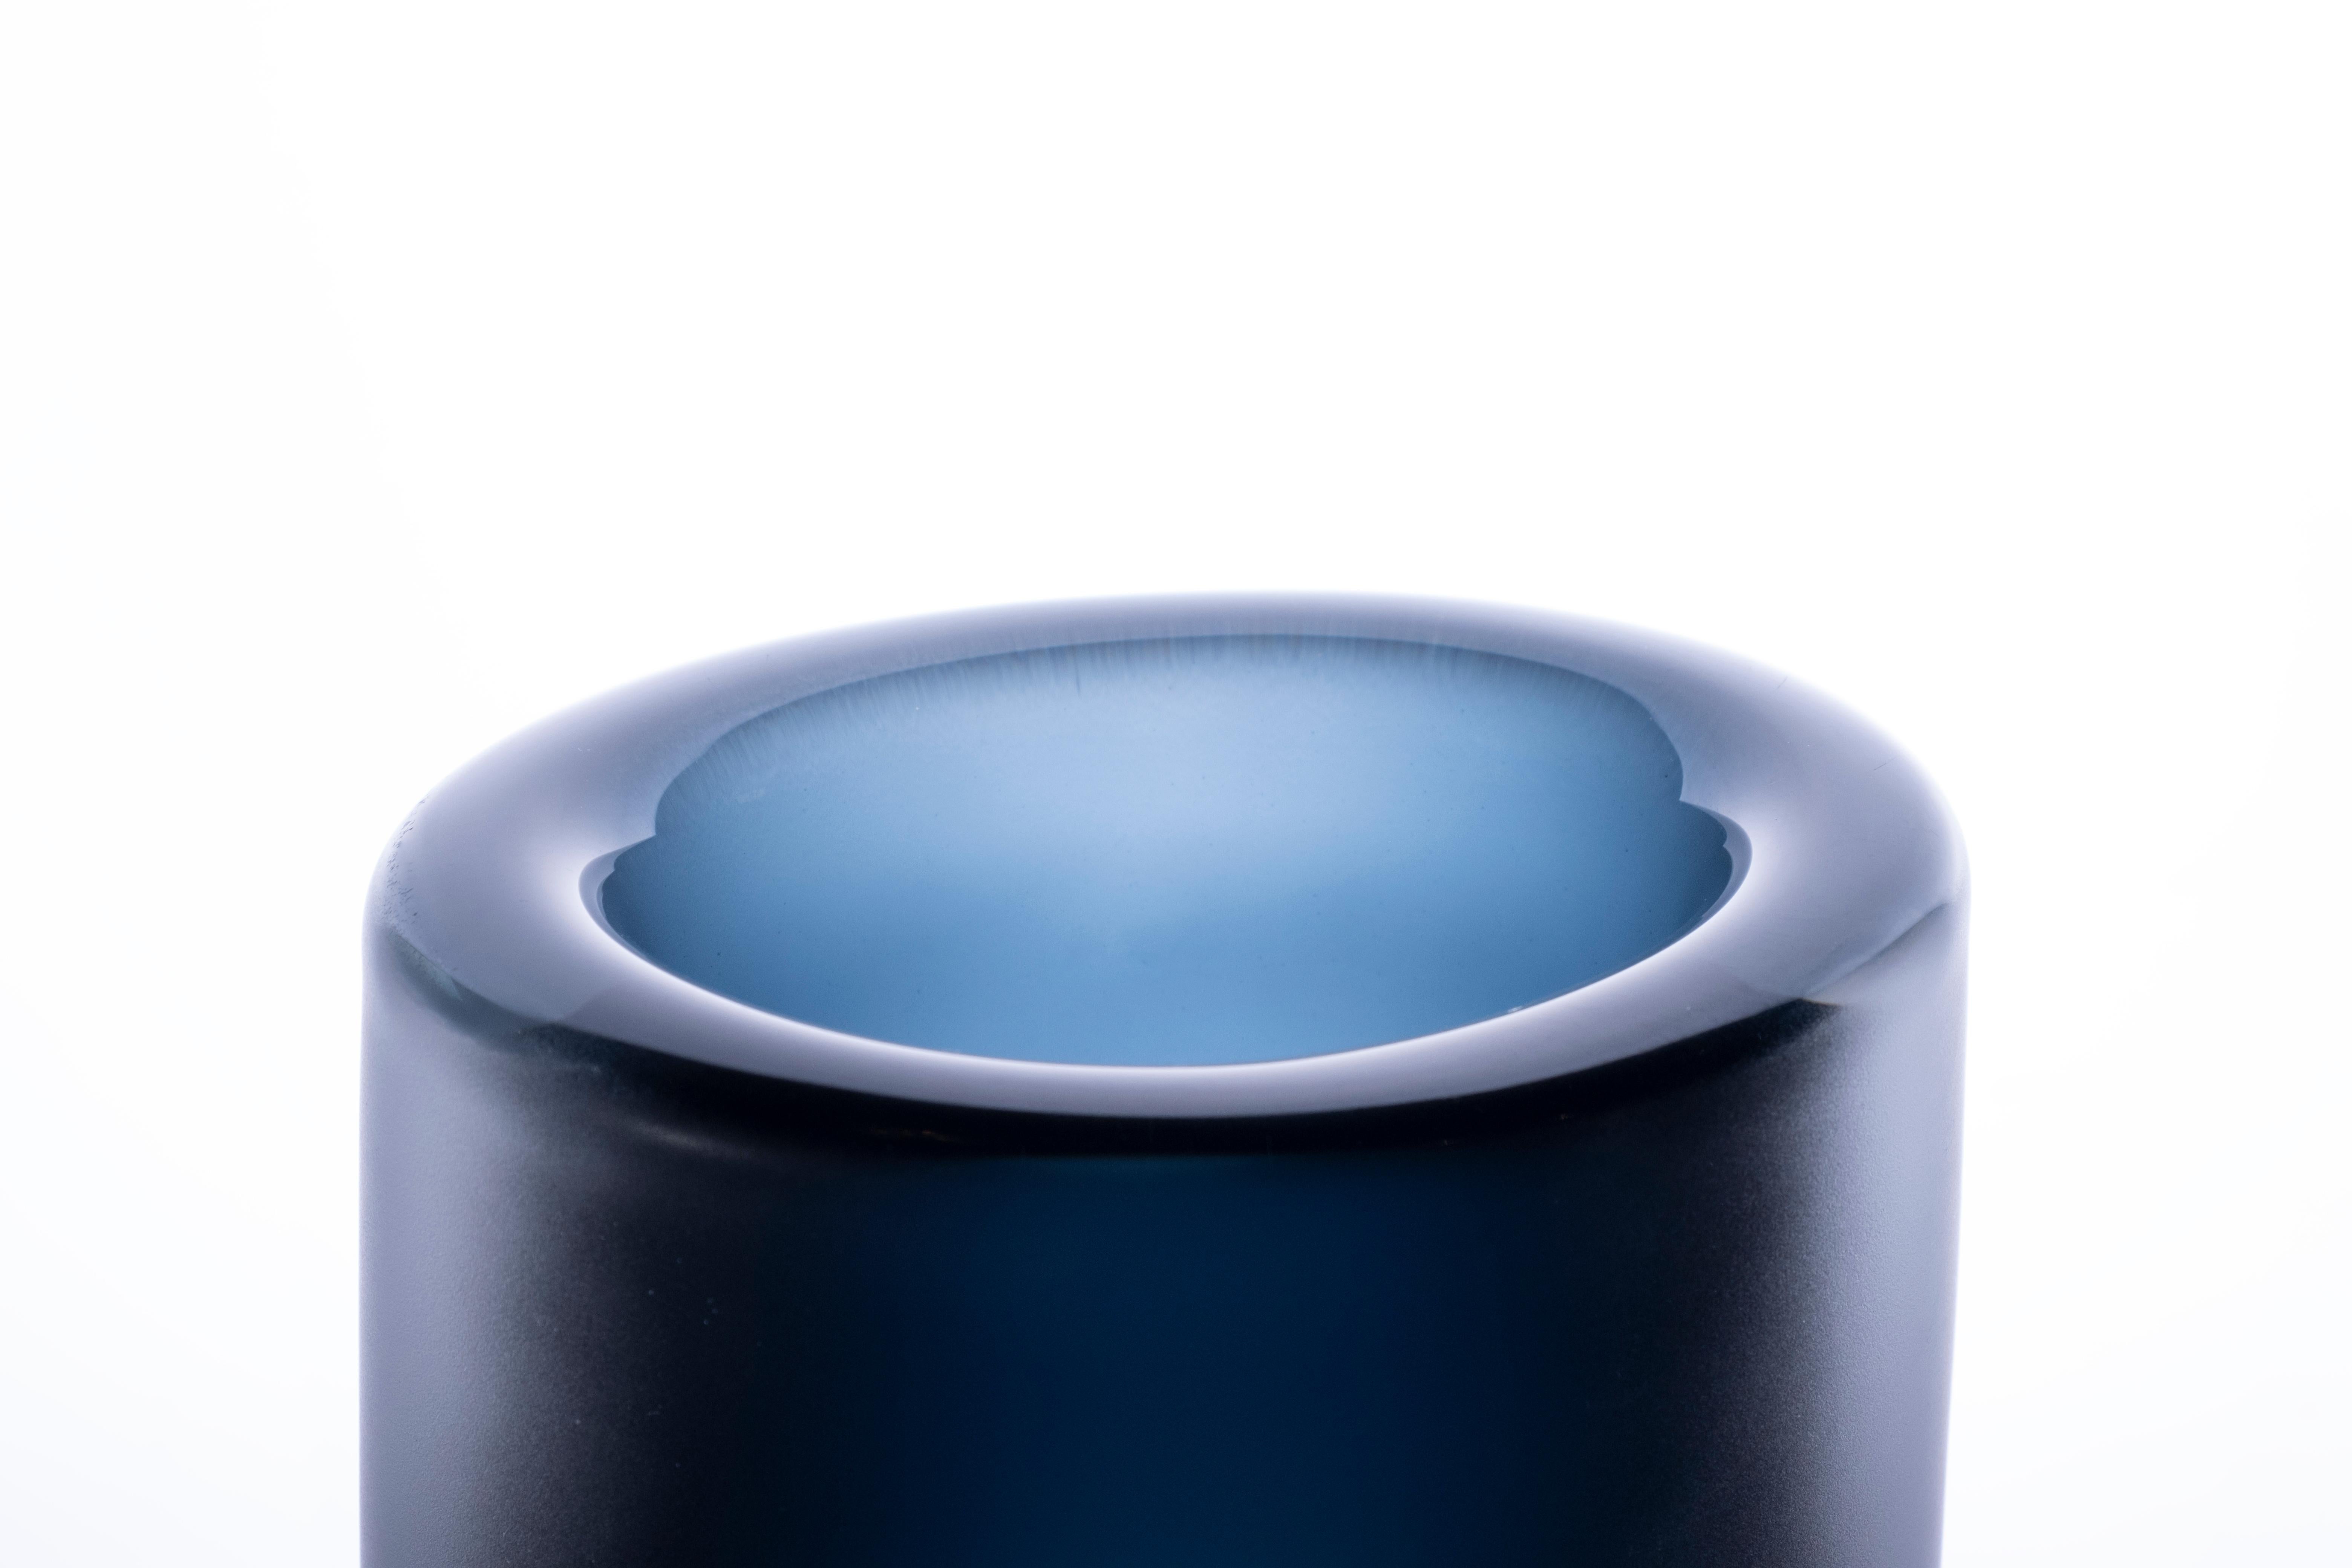 Cilindro Large Glossy - Transparente Vase, Muranoglas, von Federico Peri, 21. Jahrhundert.
Cilindro ist eine Vase aus der Essentials-Kollektion, die von Federico Peri für Purho im Frühjahr 2021 entworfen wurde.
Cilindro wird aus einem ovalen und